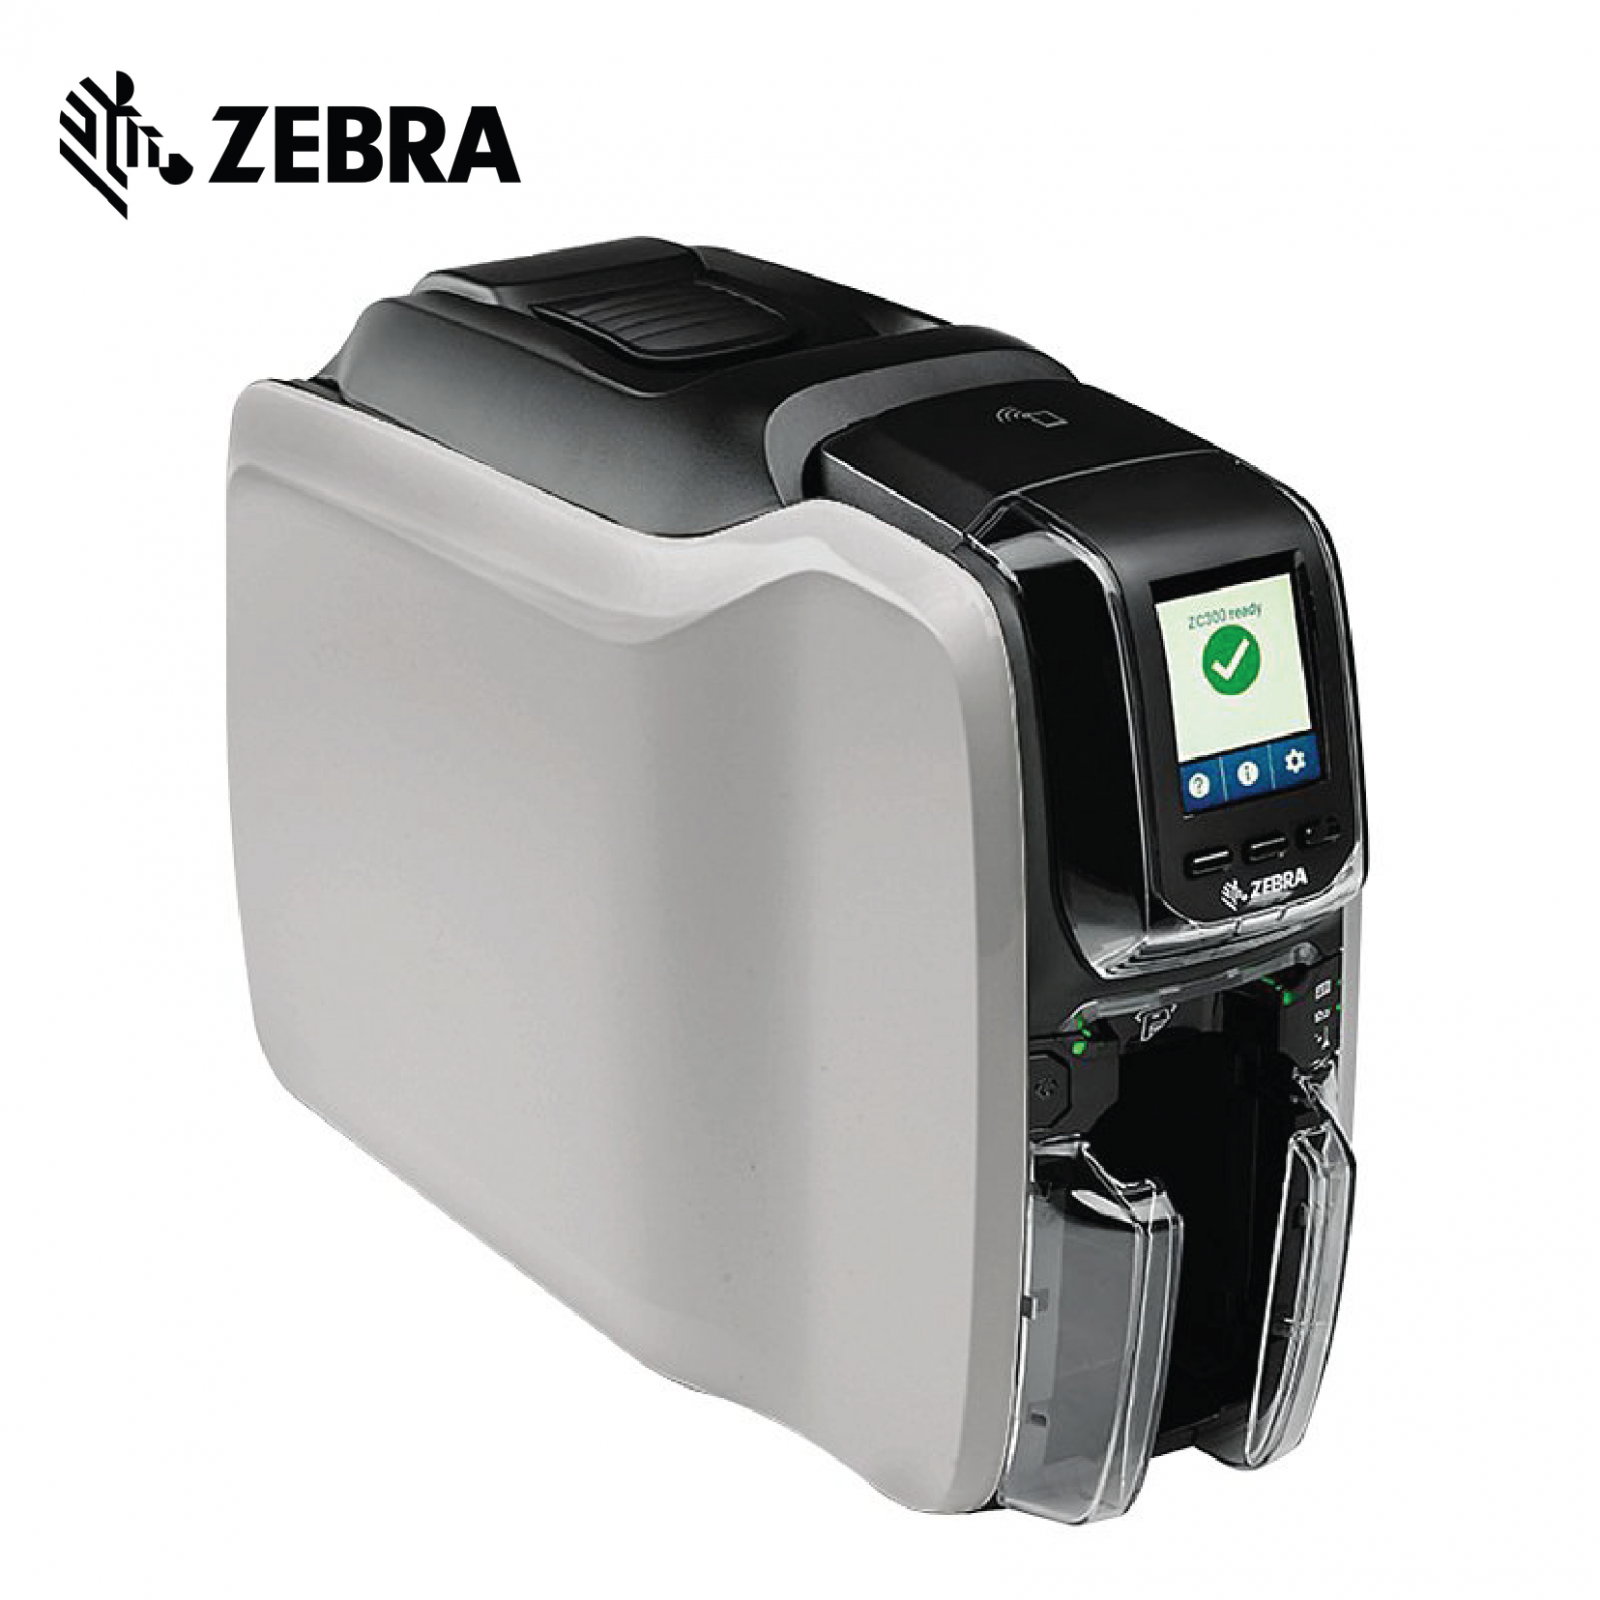 Zebra Zc300 Single Sided Card Printer My 9118